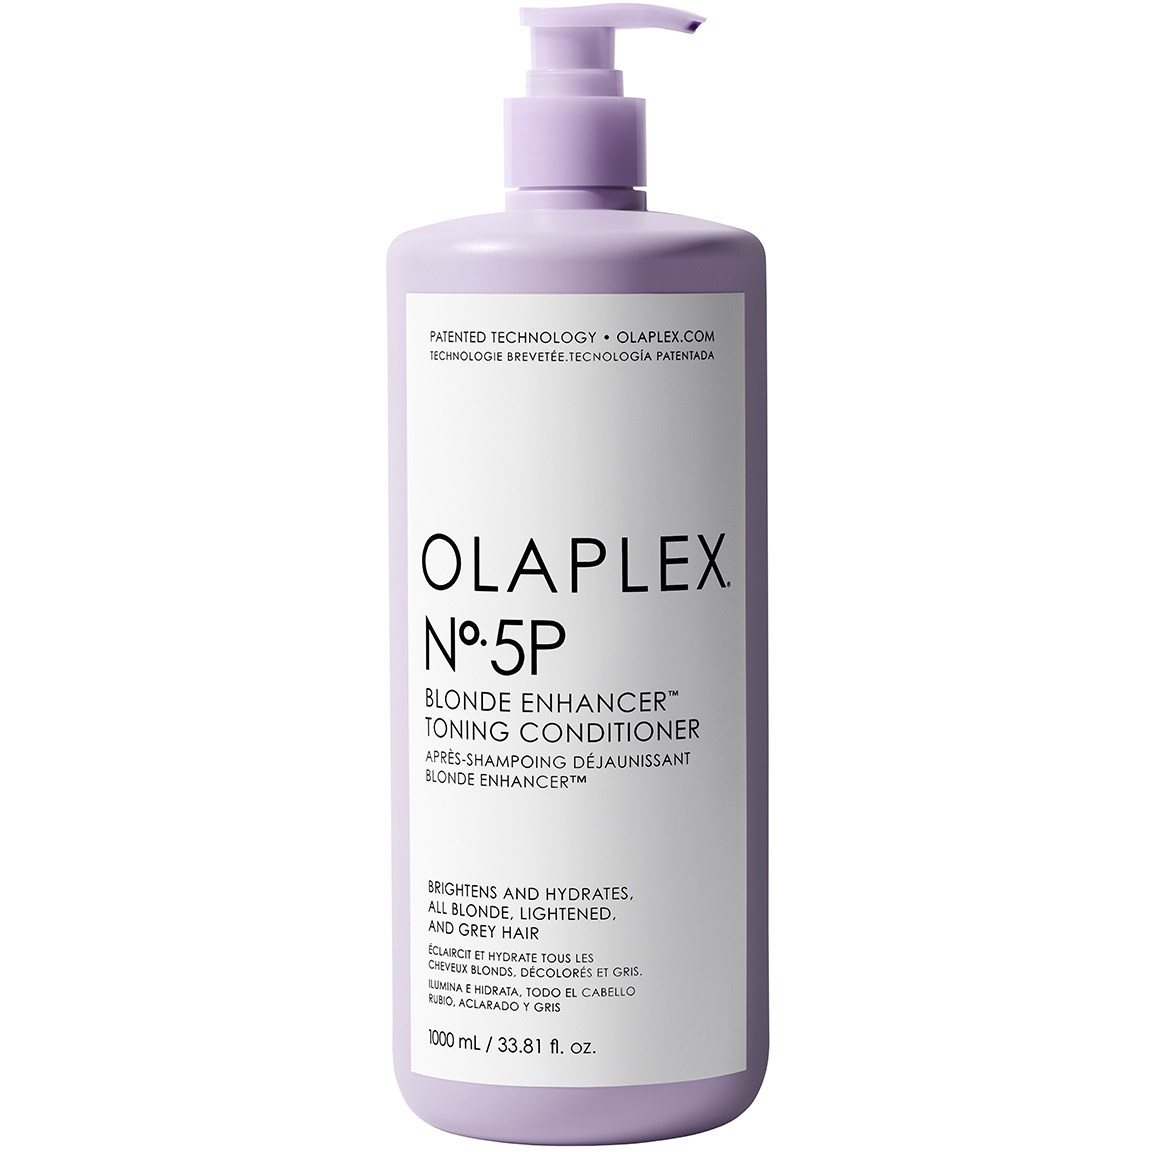 Olaplex No.5P Toning Conditioner 1000 ml